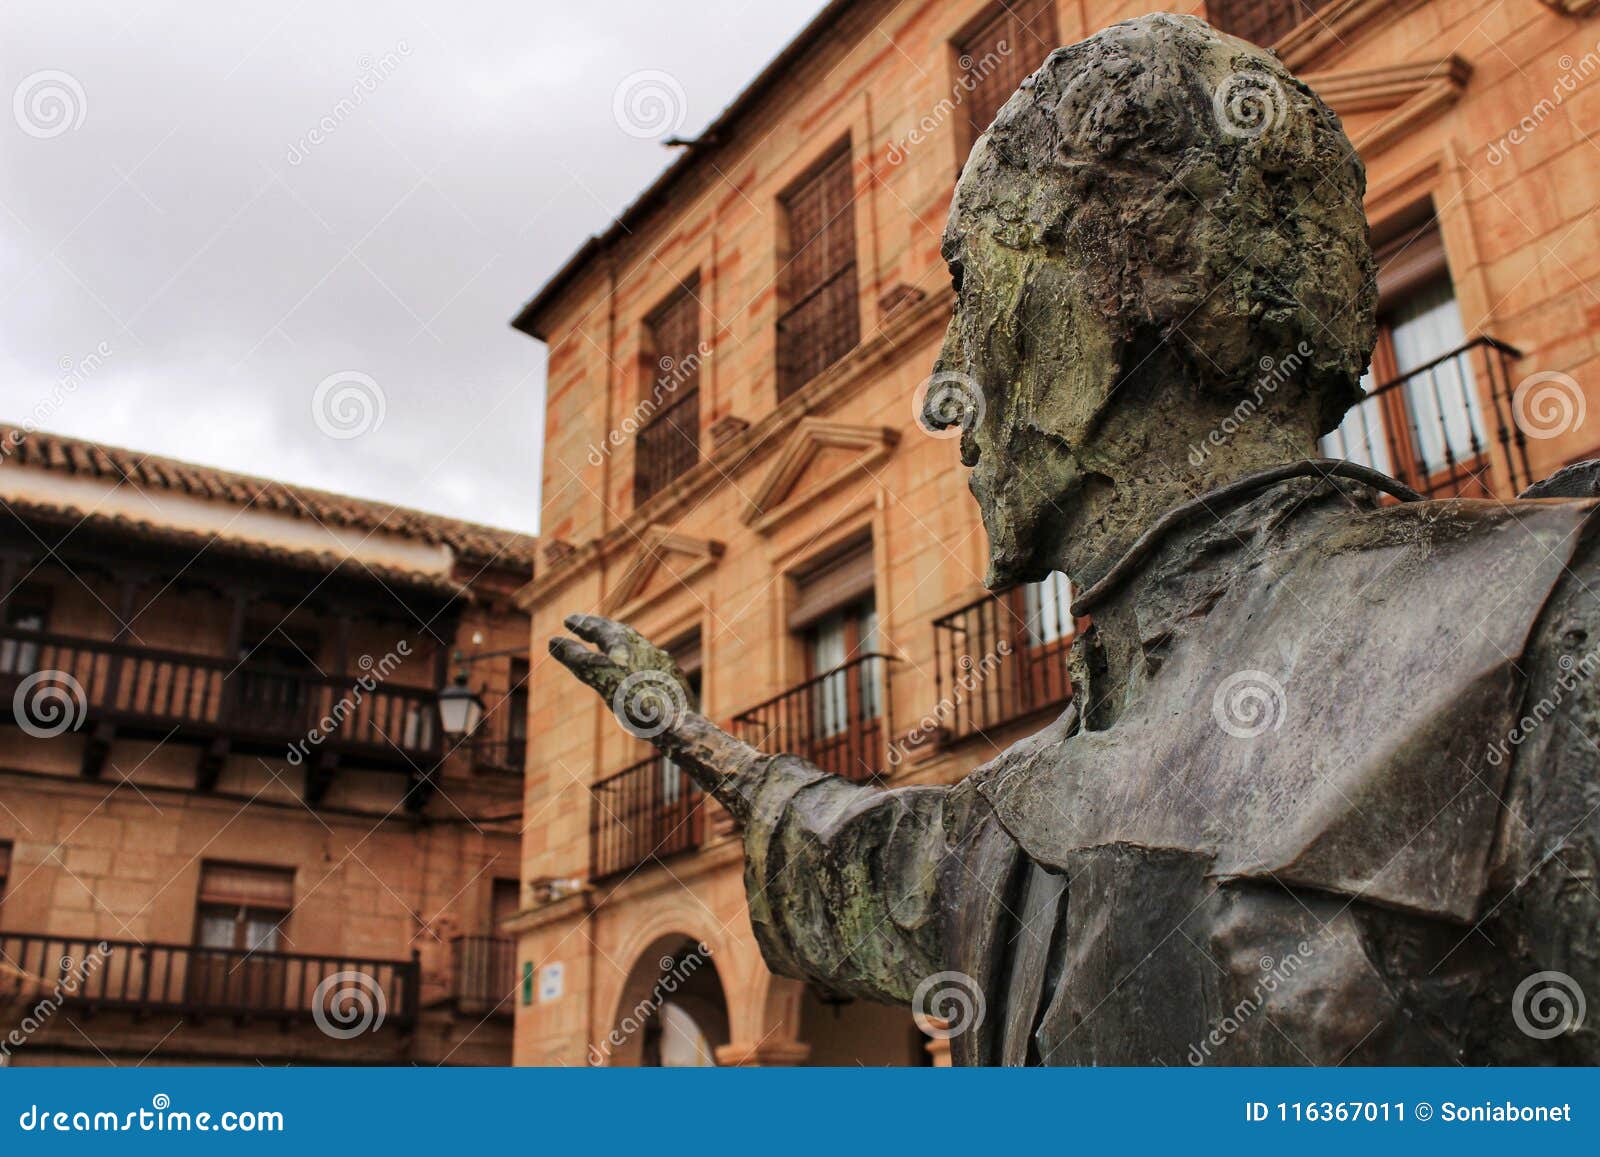 villanueva de los infantes square and don quixote statue in the foreground